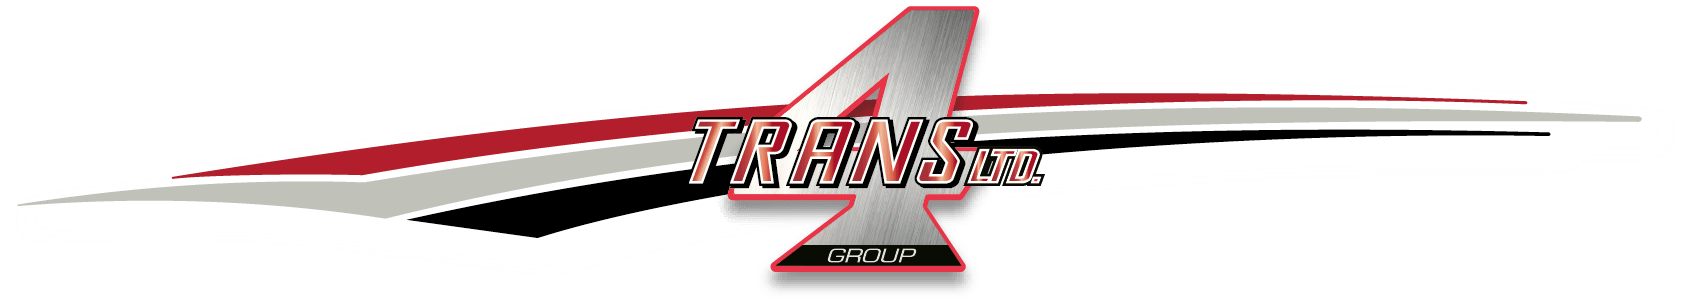 Trans4 Group, Transportation, Trucks, LTL